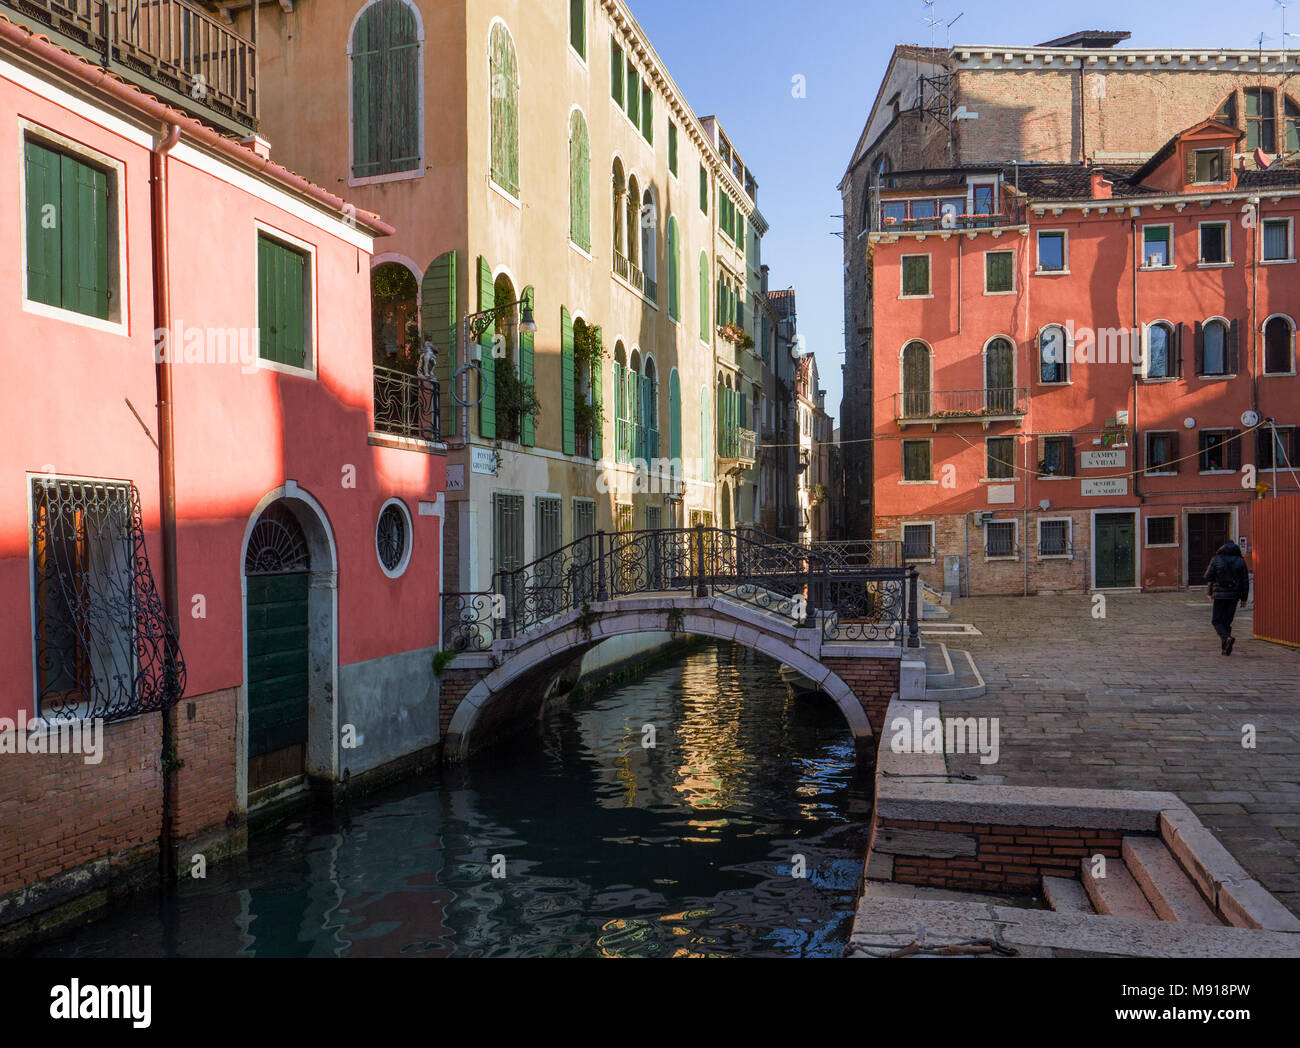 Vue splendide sur un canal romantique de Venise, Italie Banque D'Images